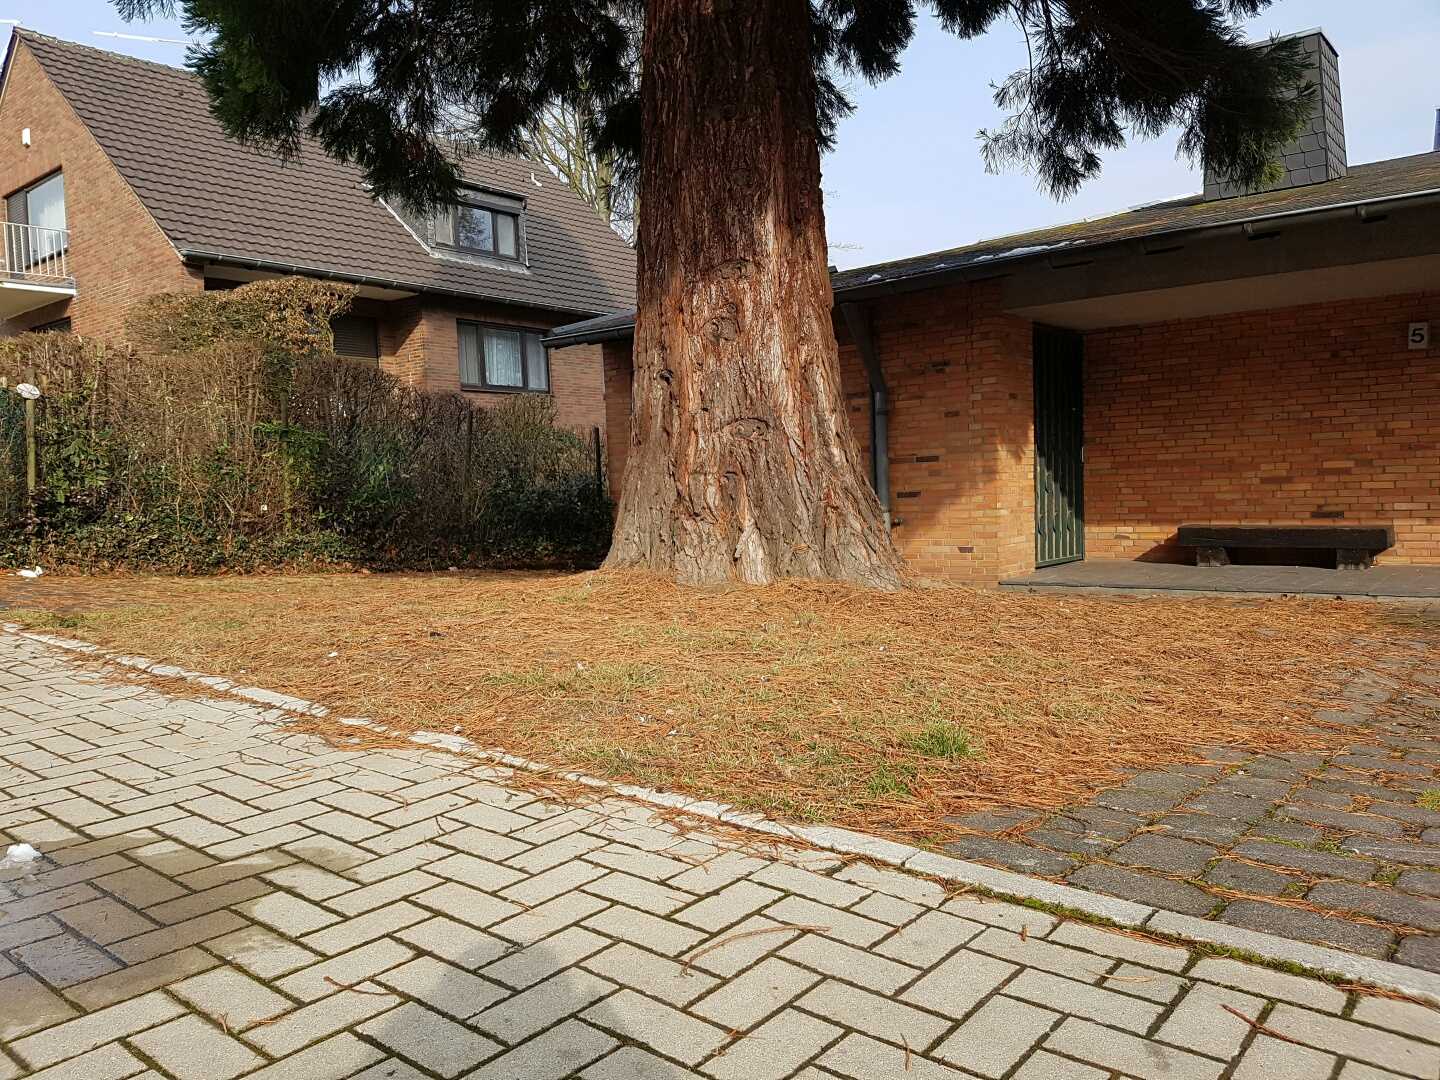 perspektive-fuer-mammutbaum-in-deutschem-vorgarten-198693-2.jpg